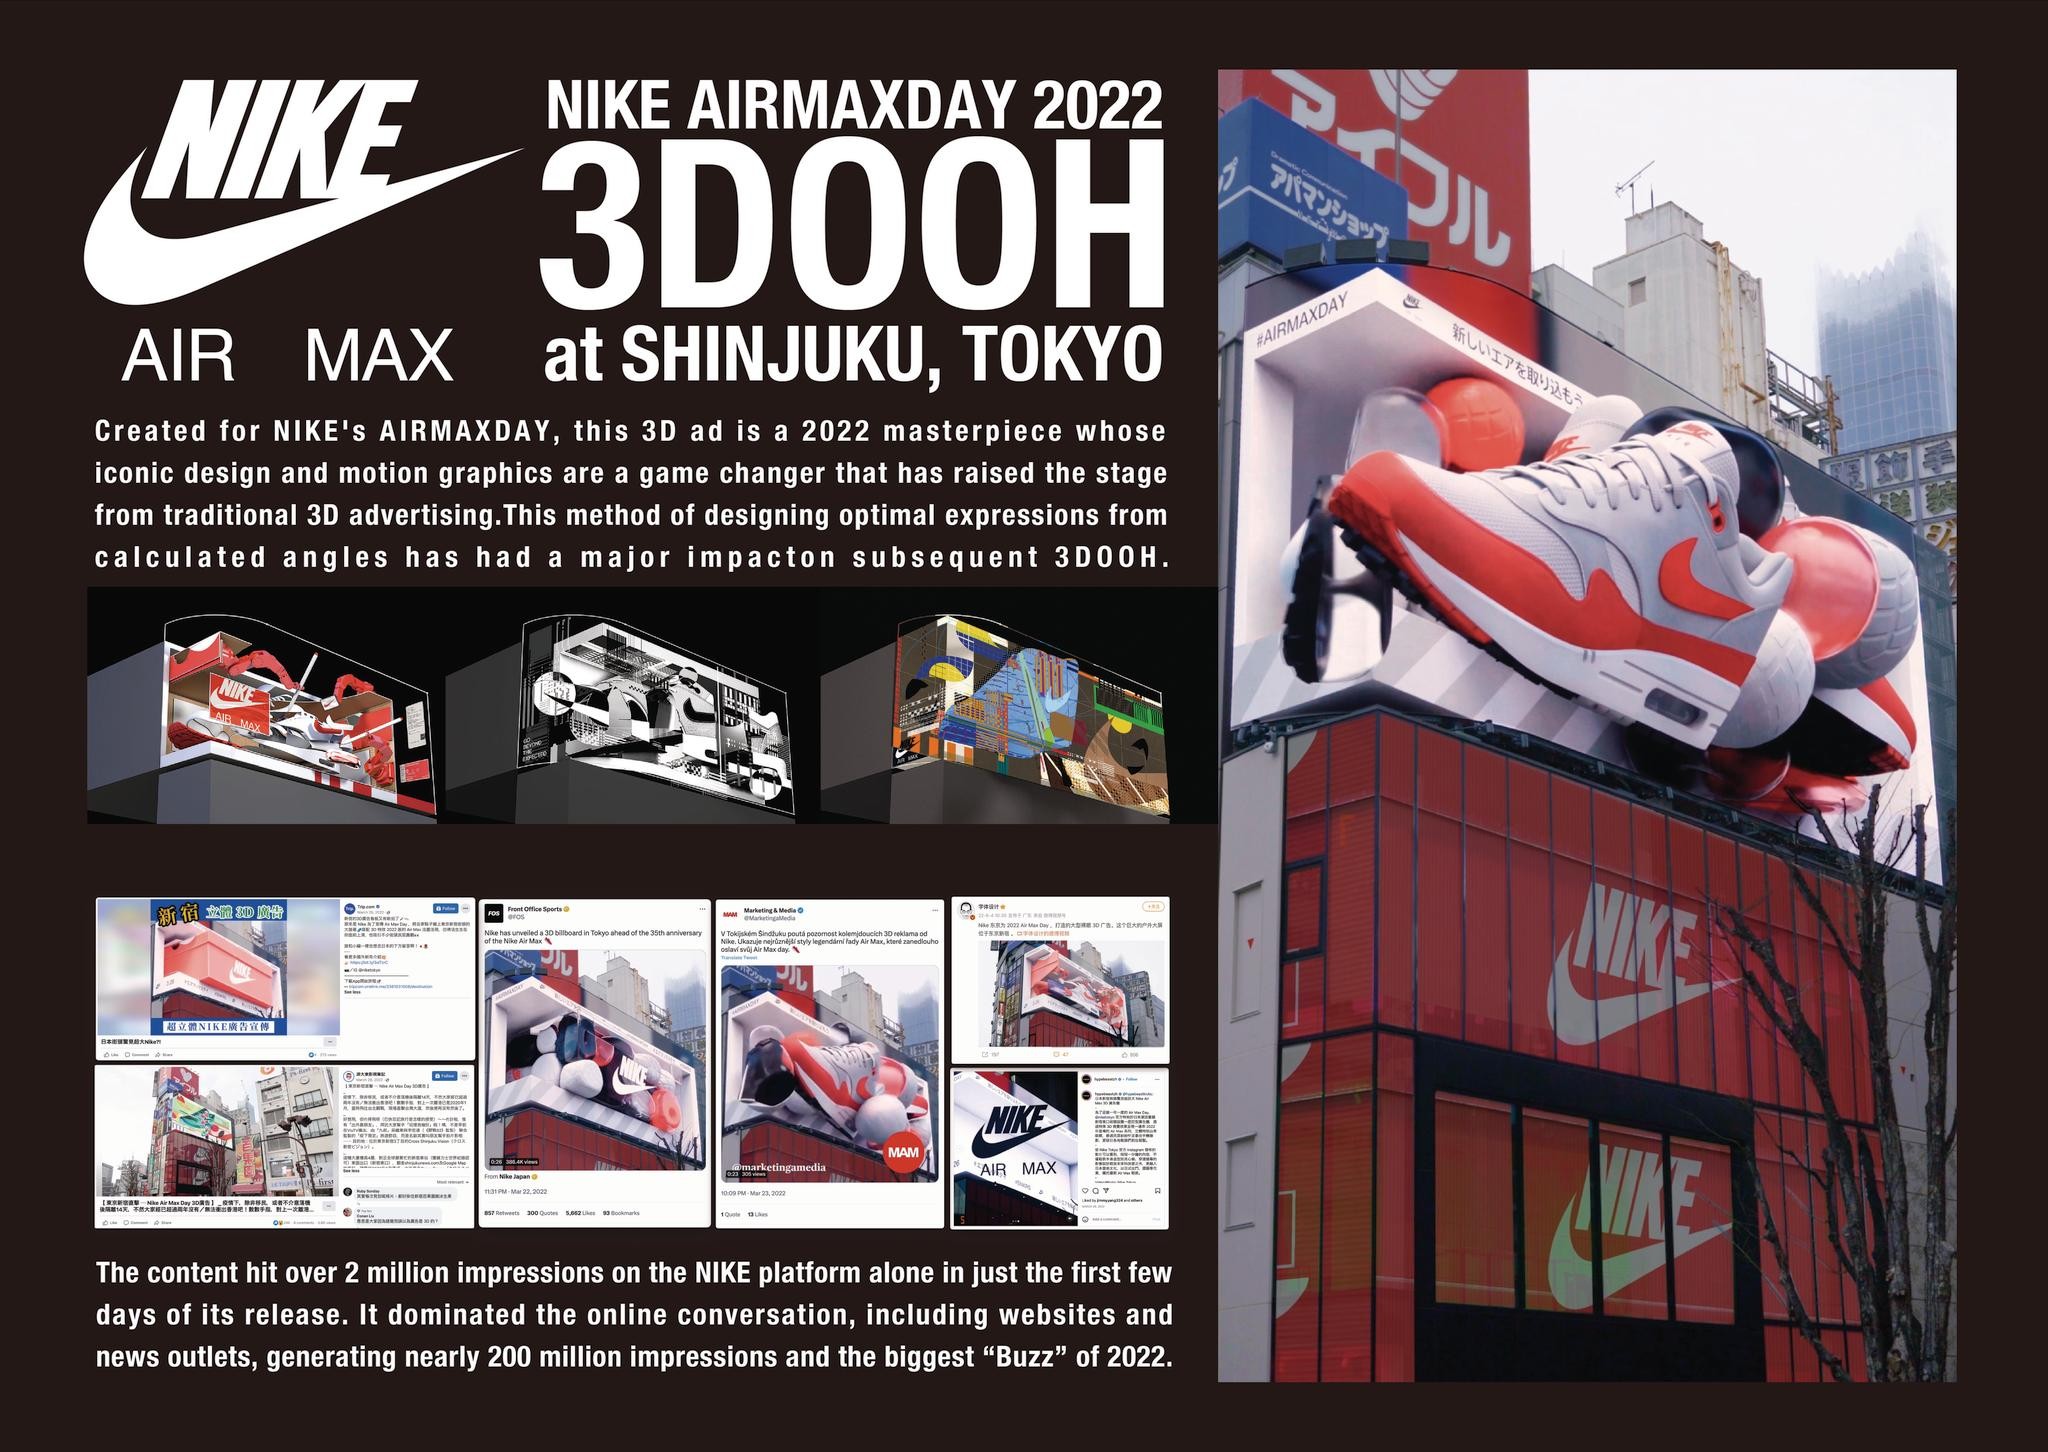 NIKE AirMax Day 2022 "3D OOH at Shinjuku, TOKYO"